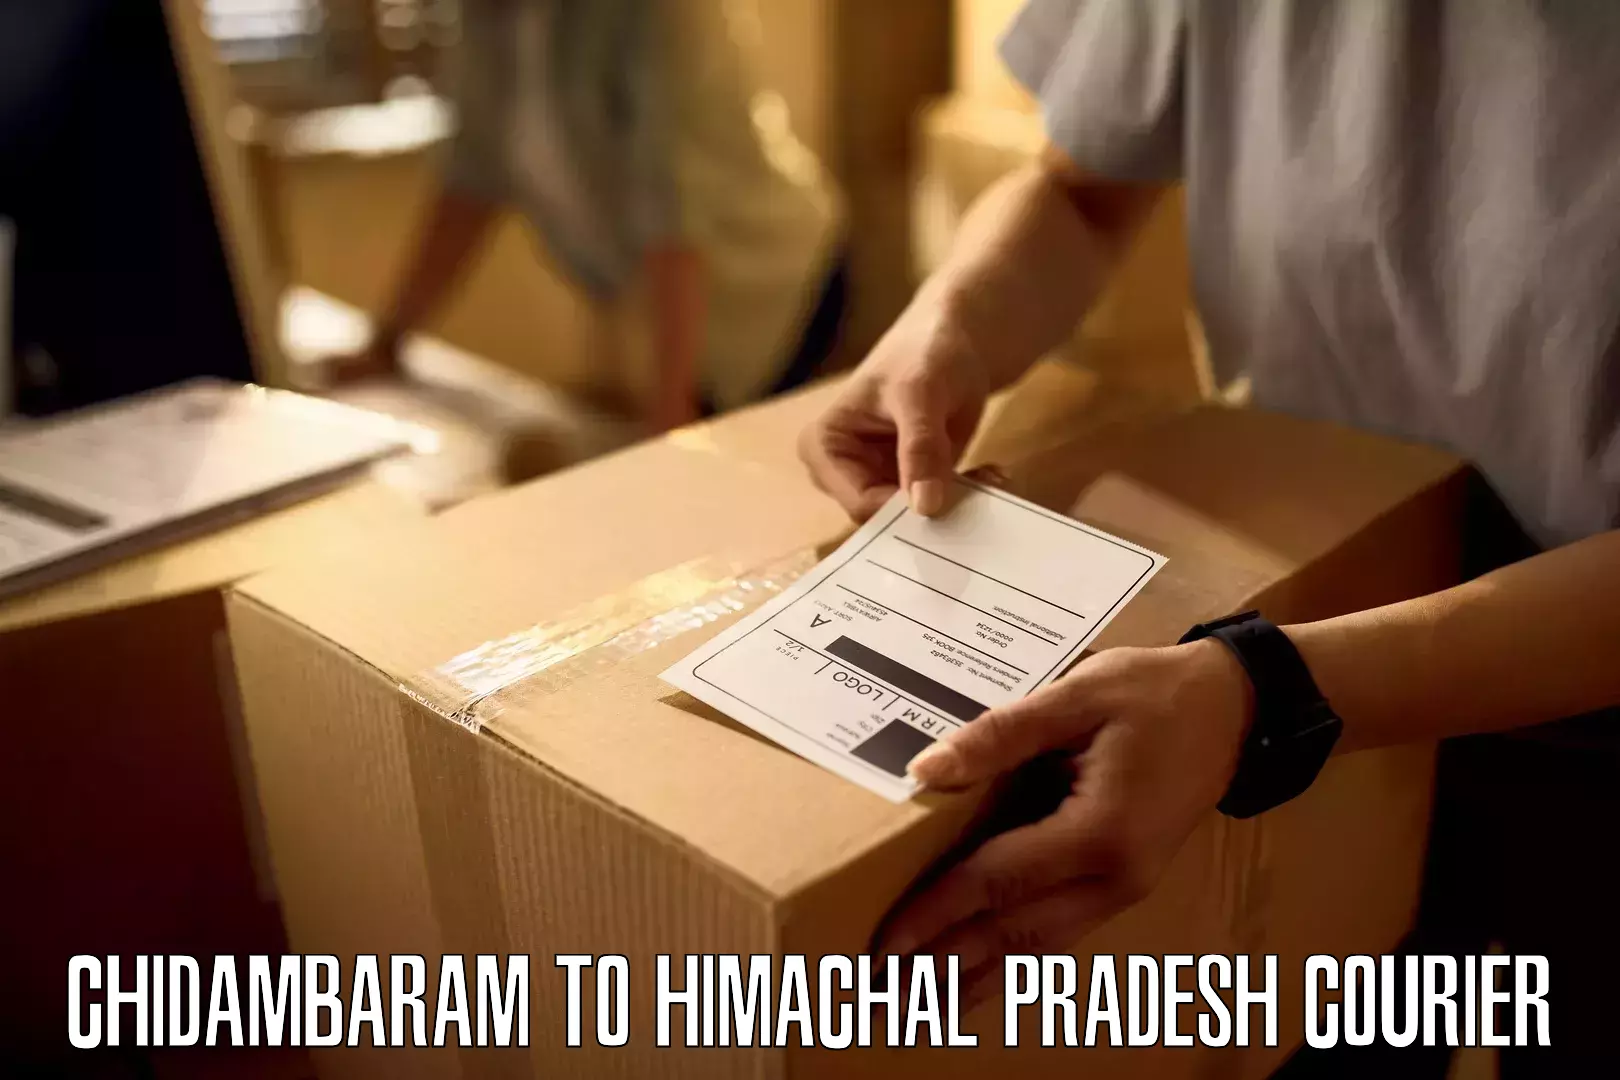 Custom courier solutions Chidambaram to Himachal Pradesh